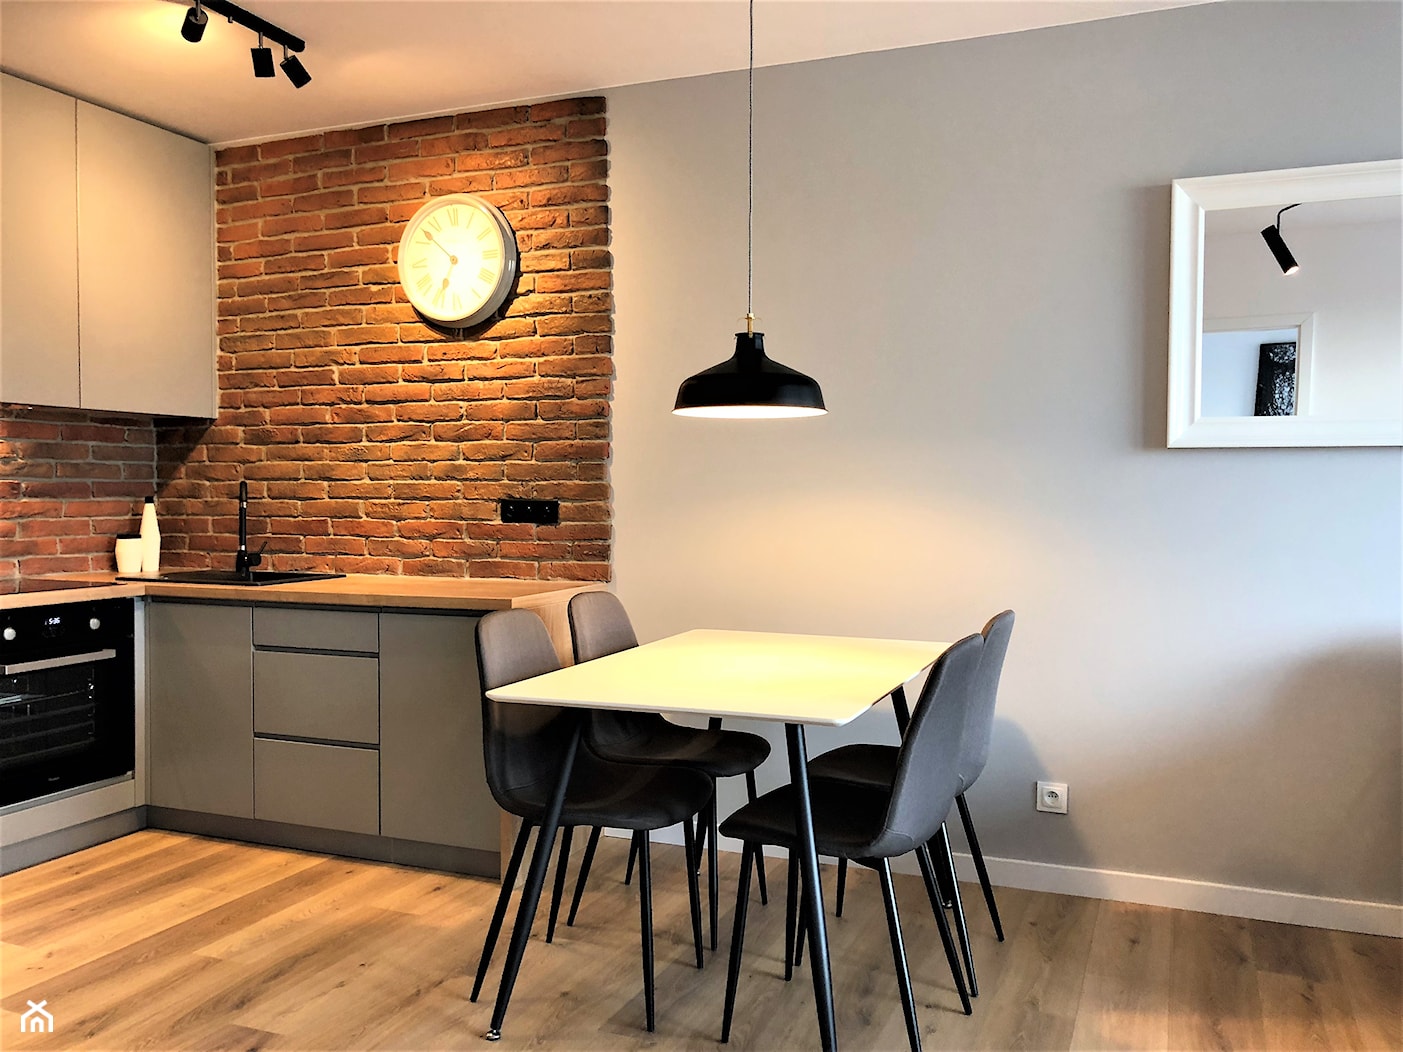 Realizacja - oryginalne mieszkanie na wynajem - Średnia szara jadalnia w kuchni, styl nowoczesny - zdjęcie od DekoDeko - Homebook